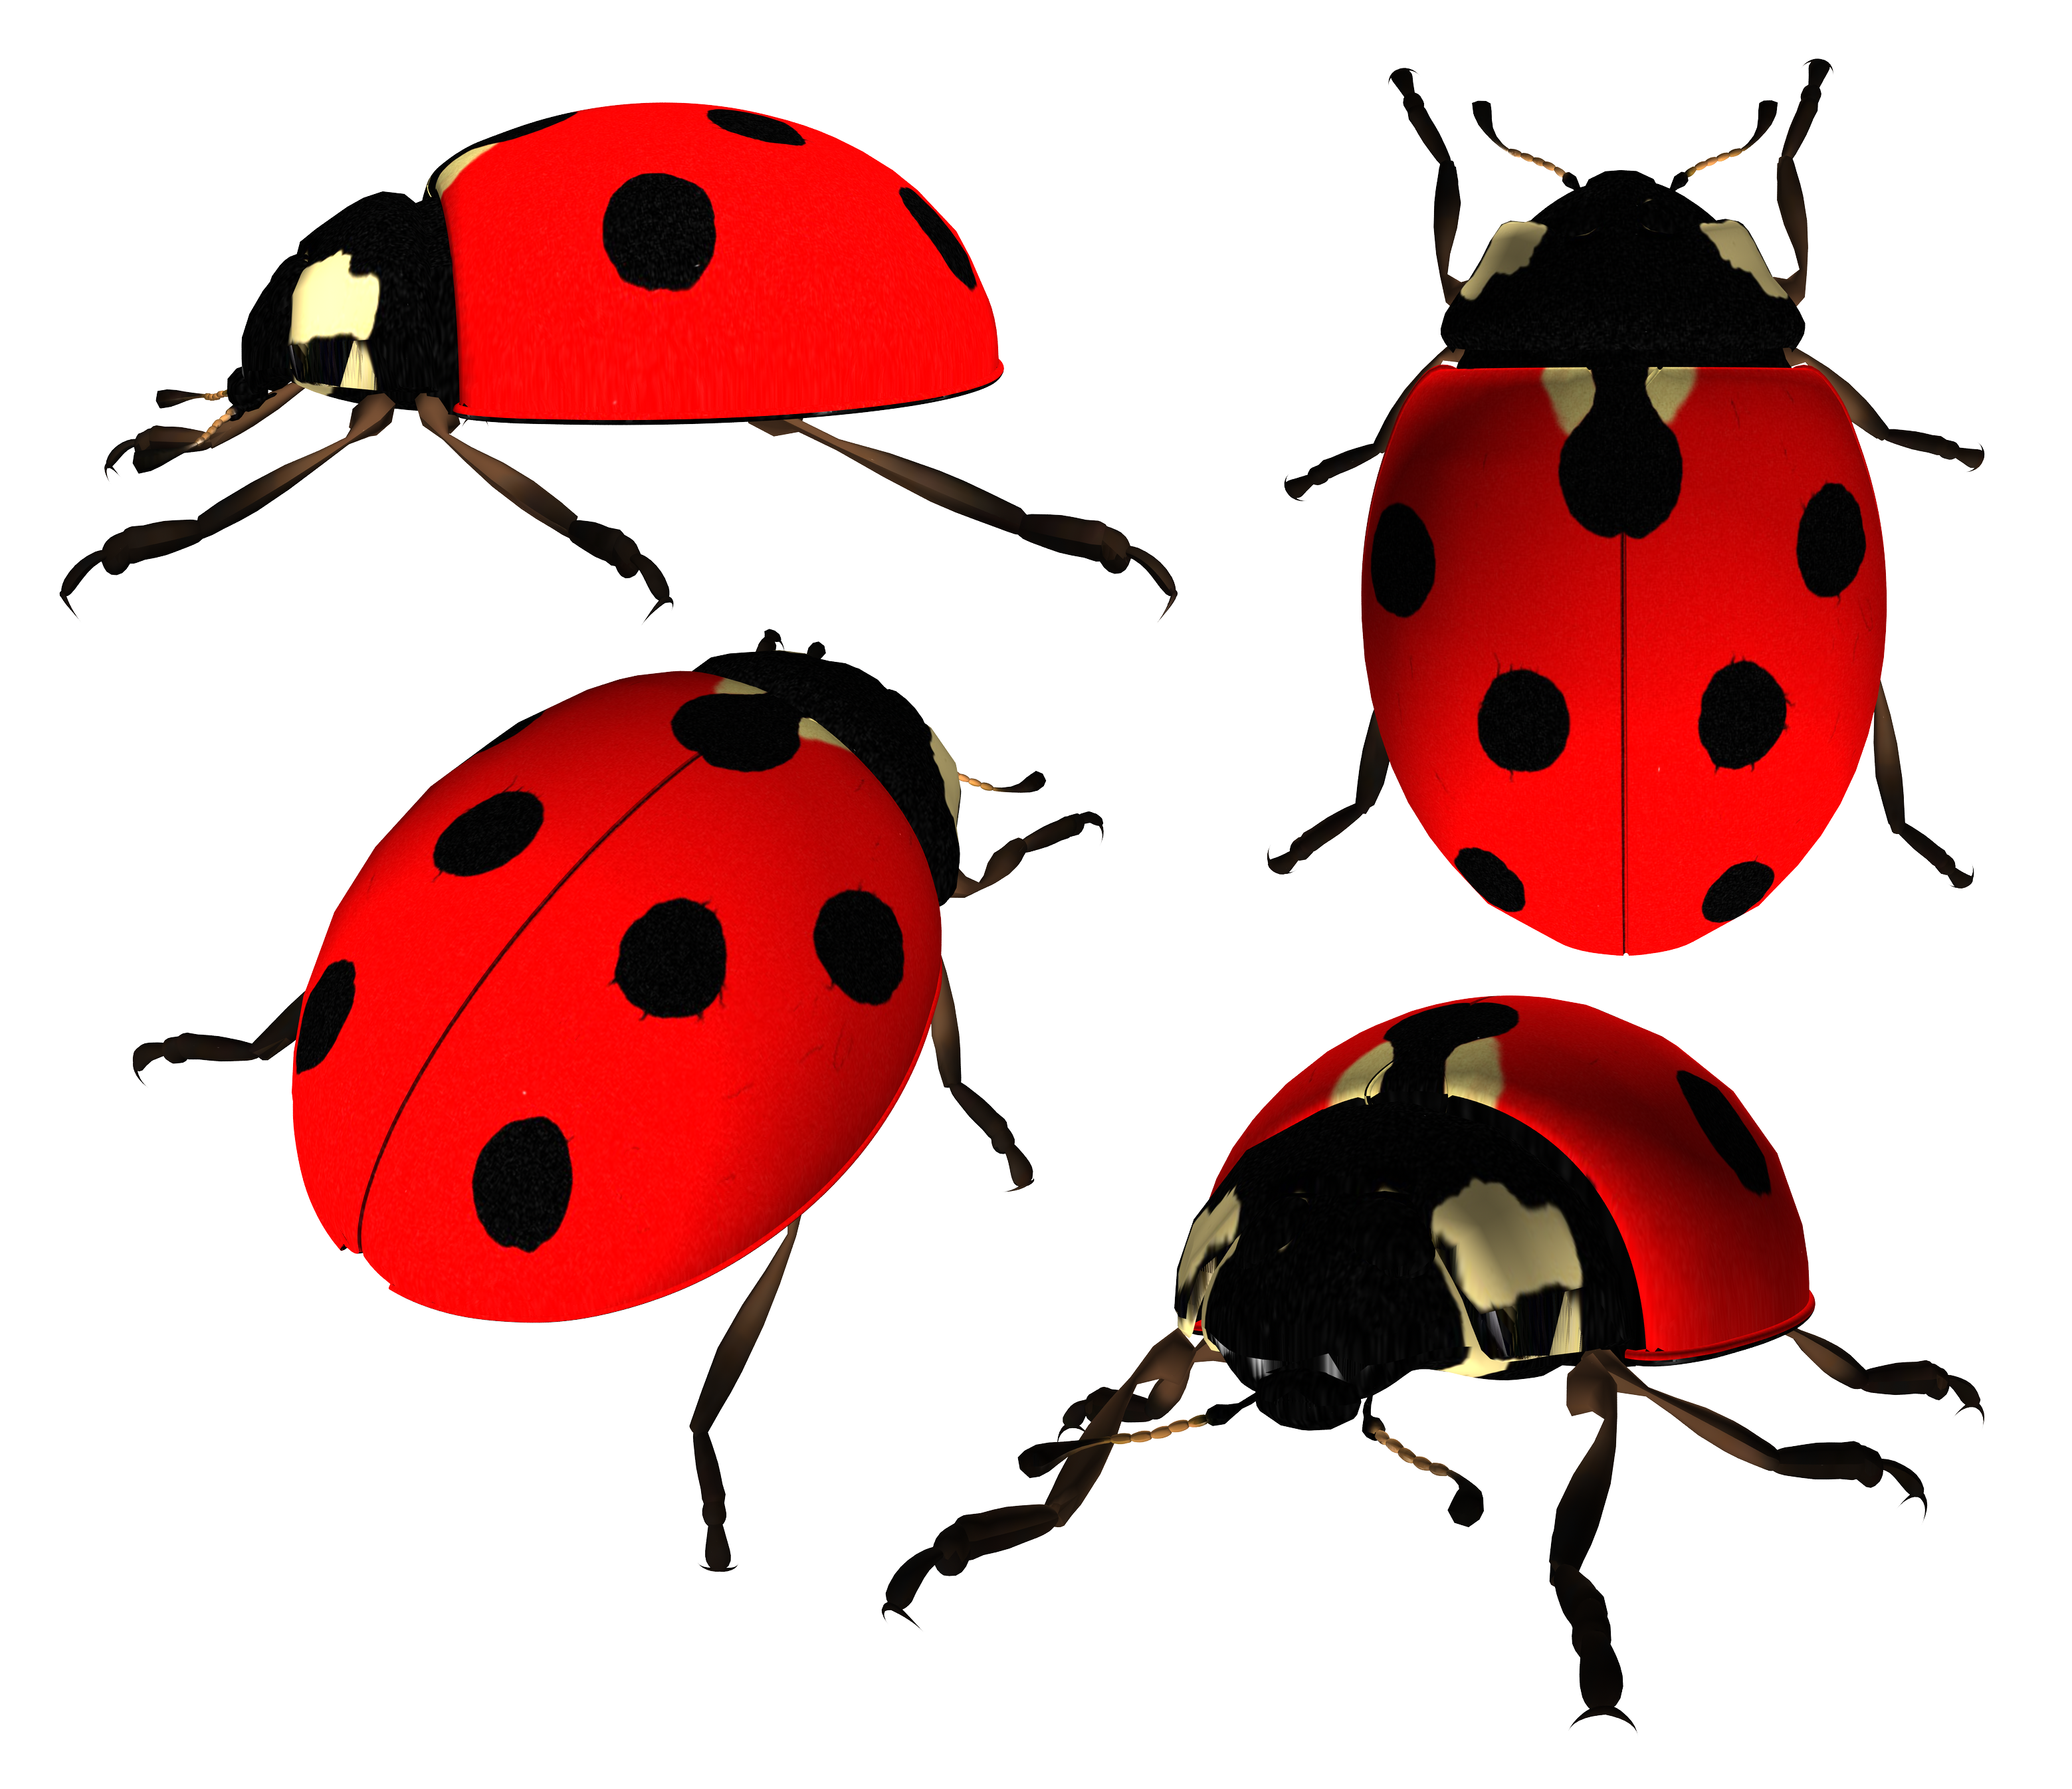 Ladybug Png Image - Ladybug, Transparent background PNG HD thumbnail